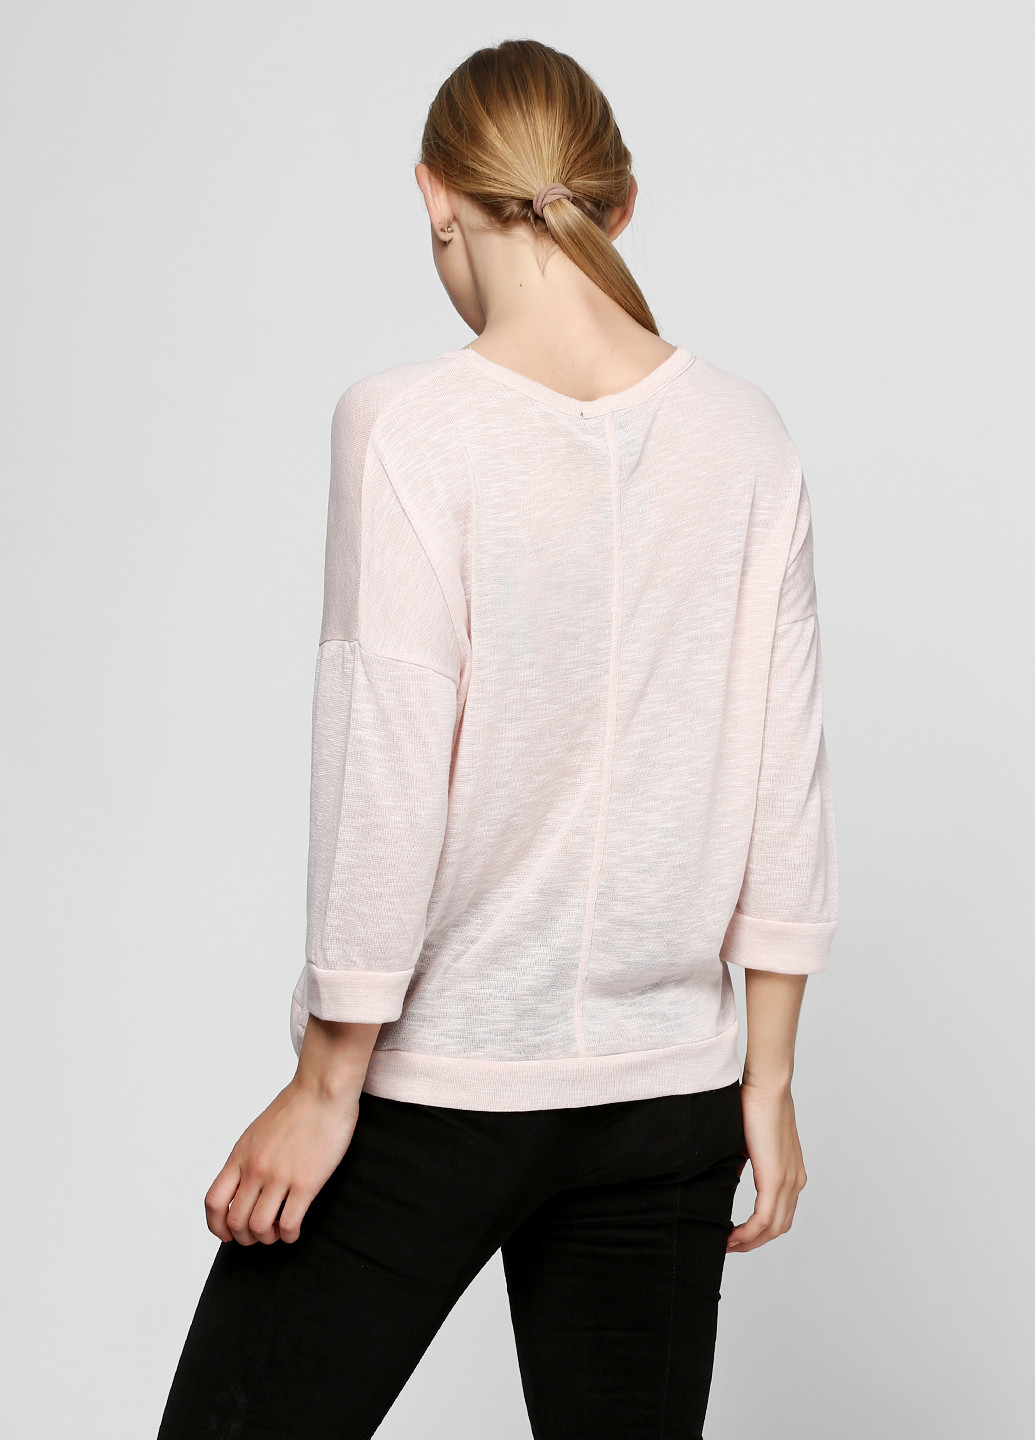 Розовый демисезонный пуловер пуловер Ellos